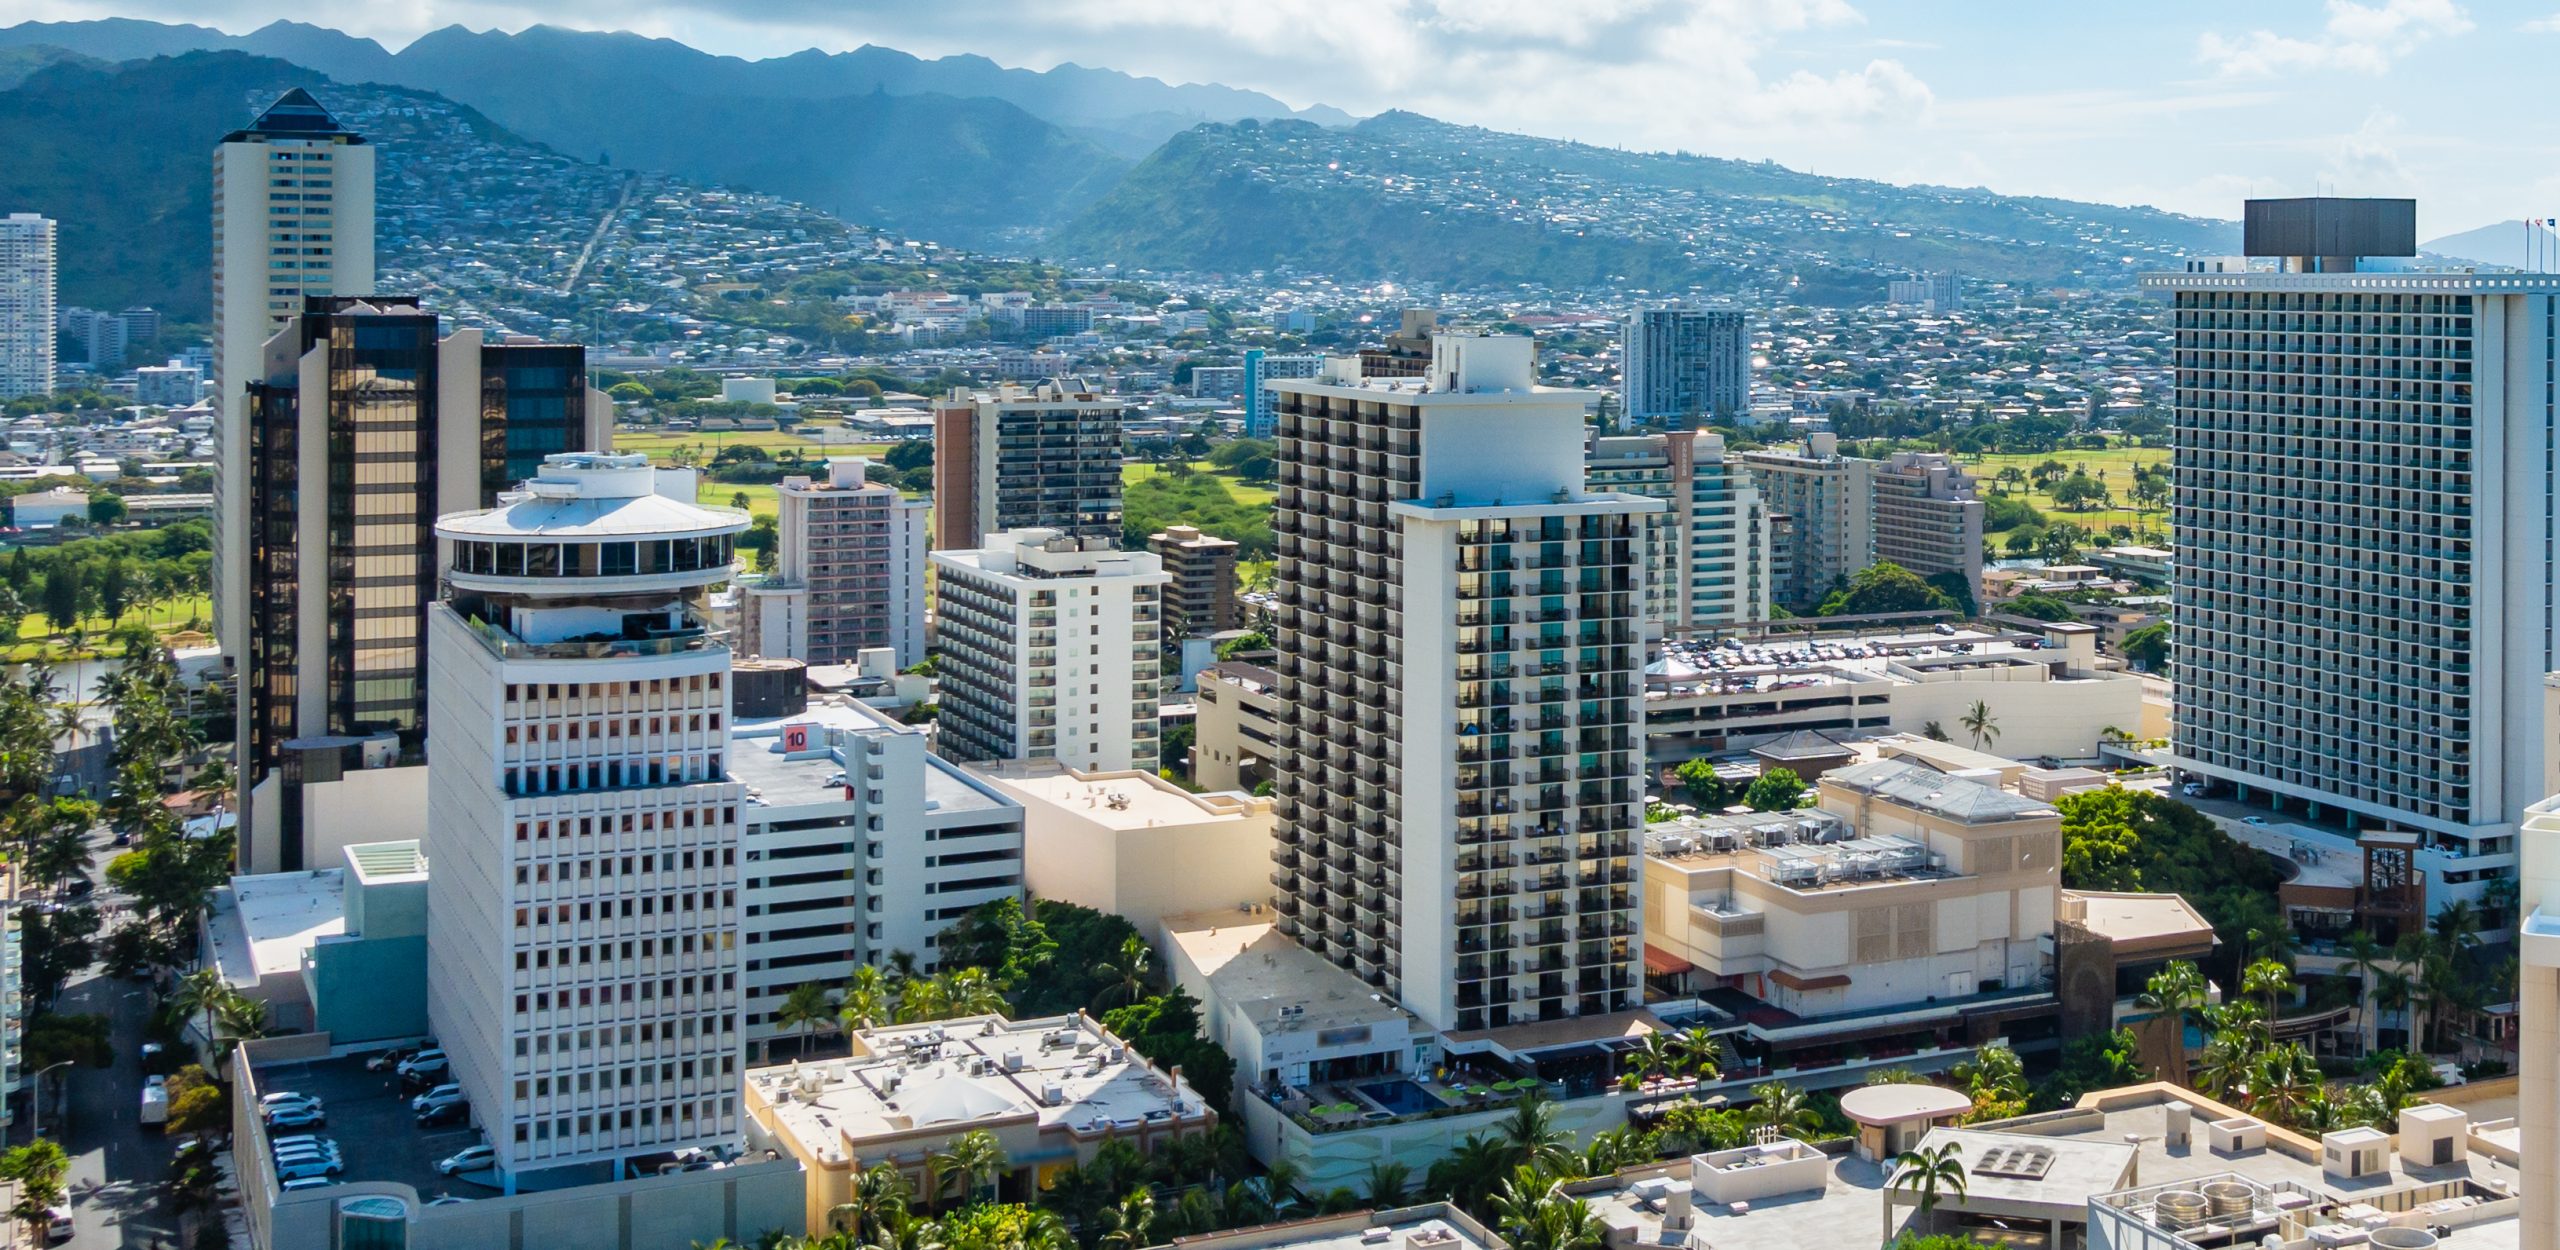 Cityscape of Waikiki, Honolulu, Oahu Island, Hawaii